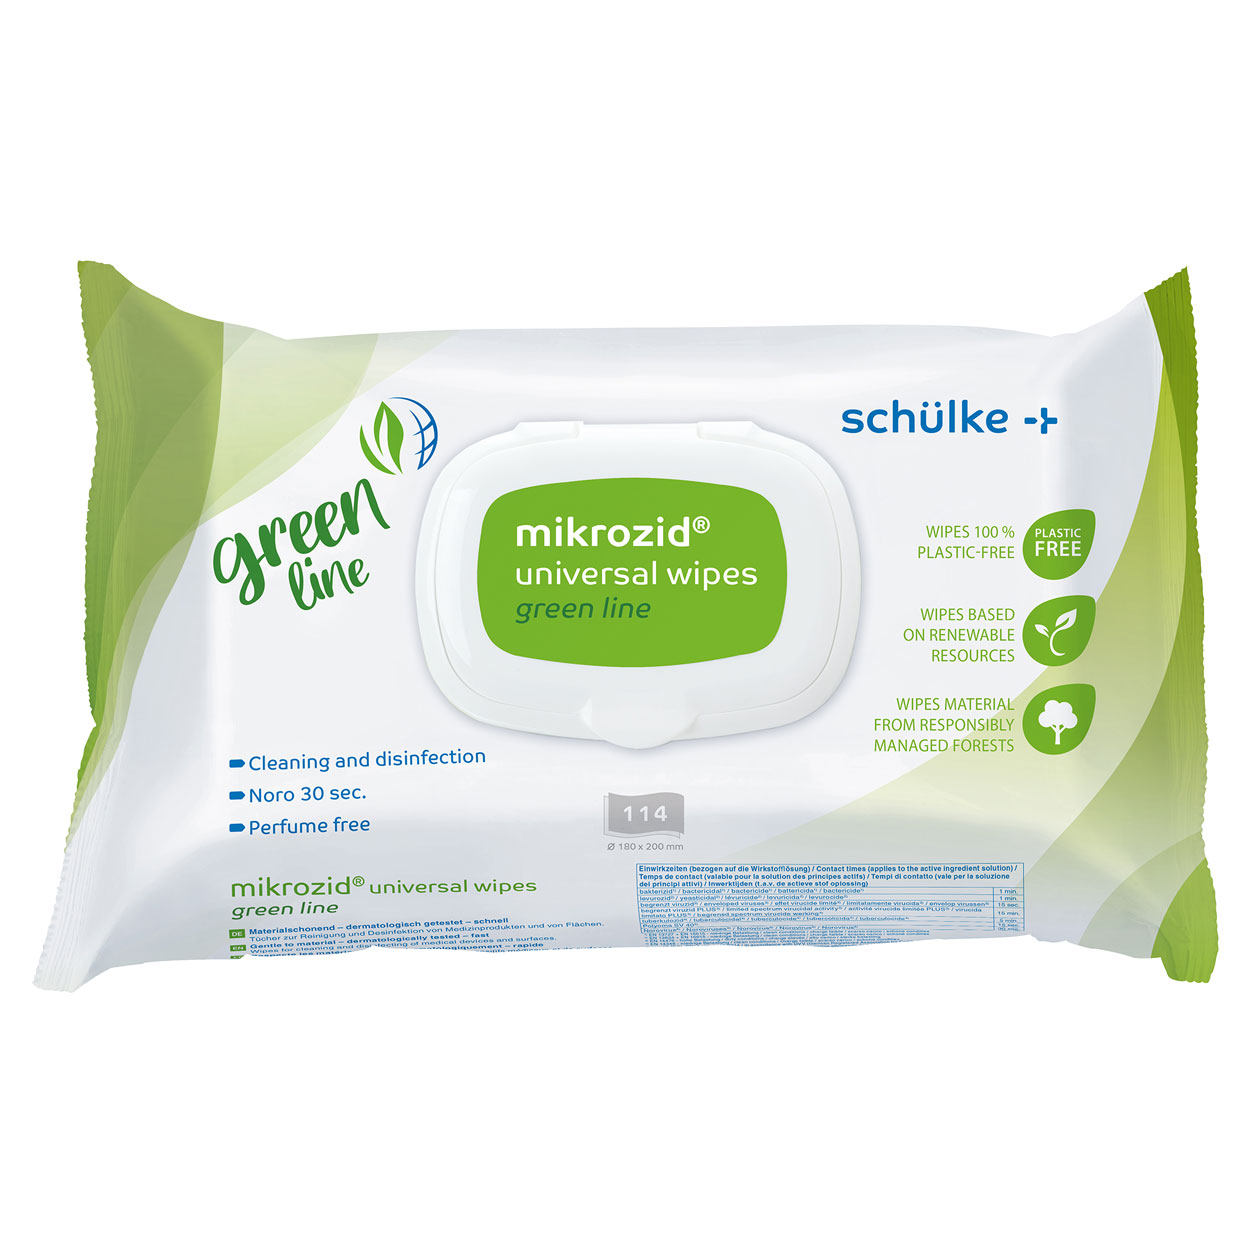 mikrozid® universal wipes green line Desinfektionstücher - Packung à 114 Tücher